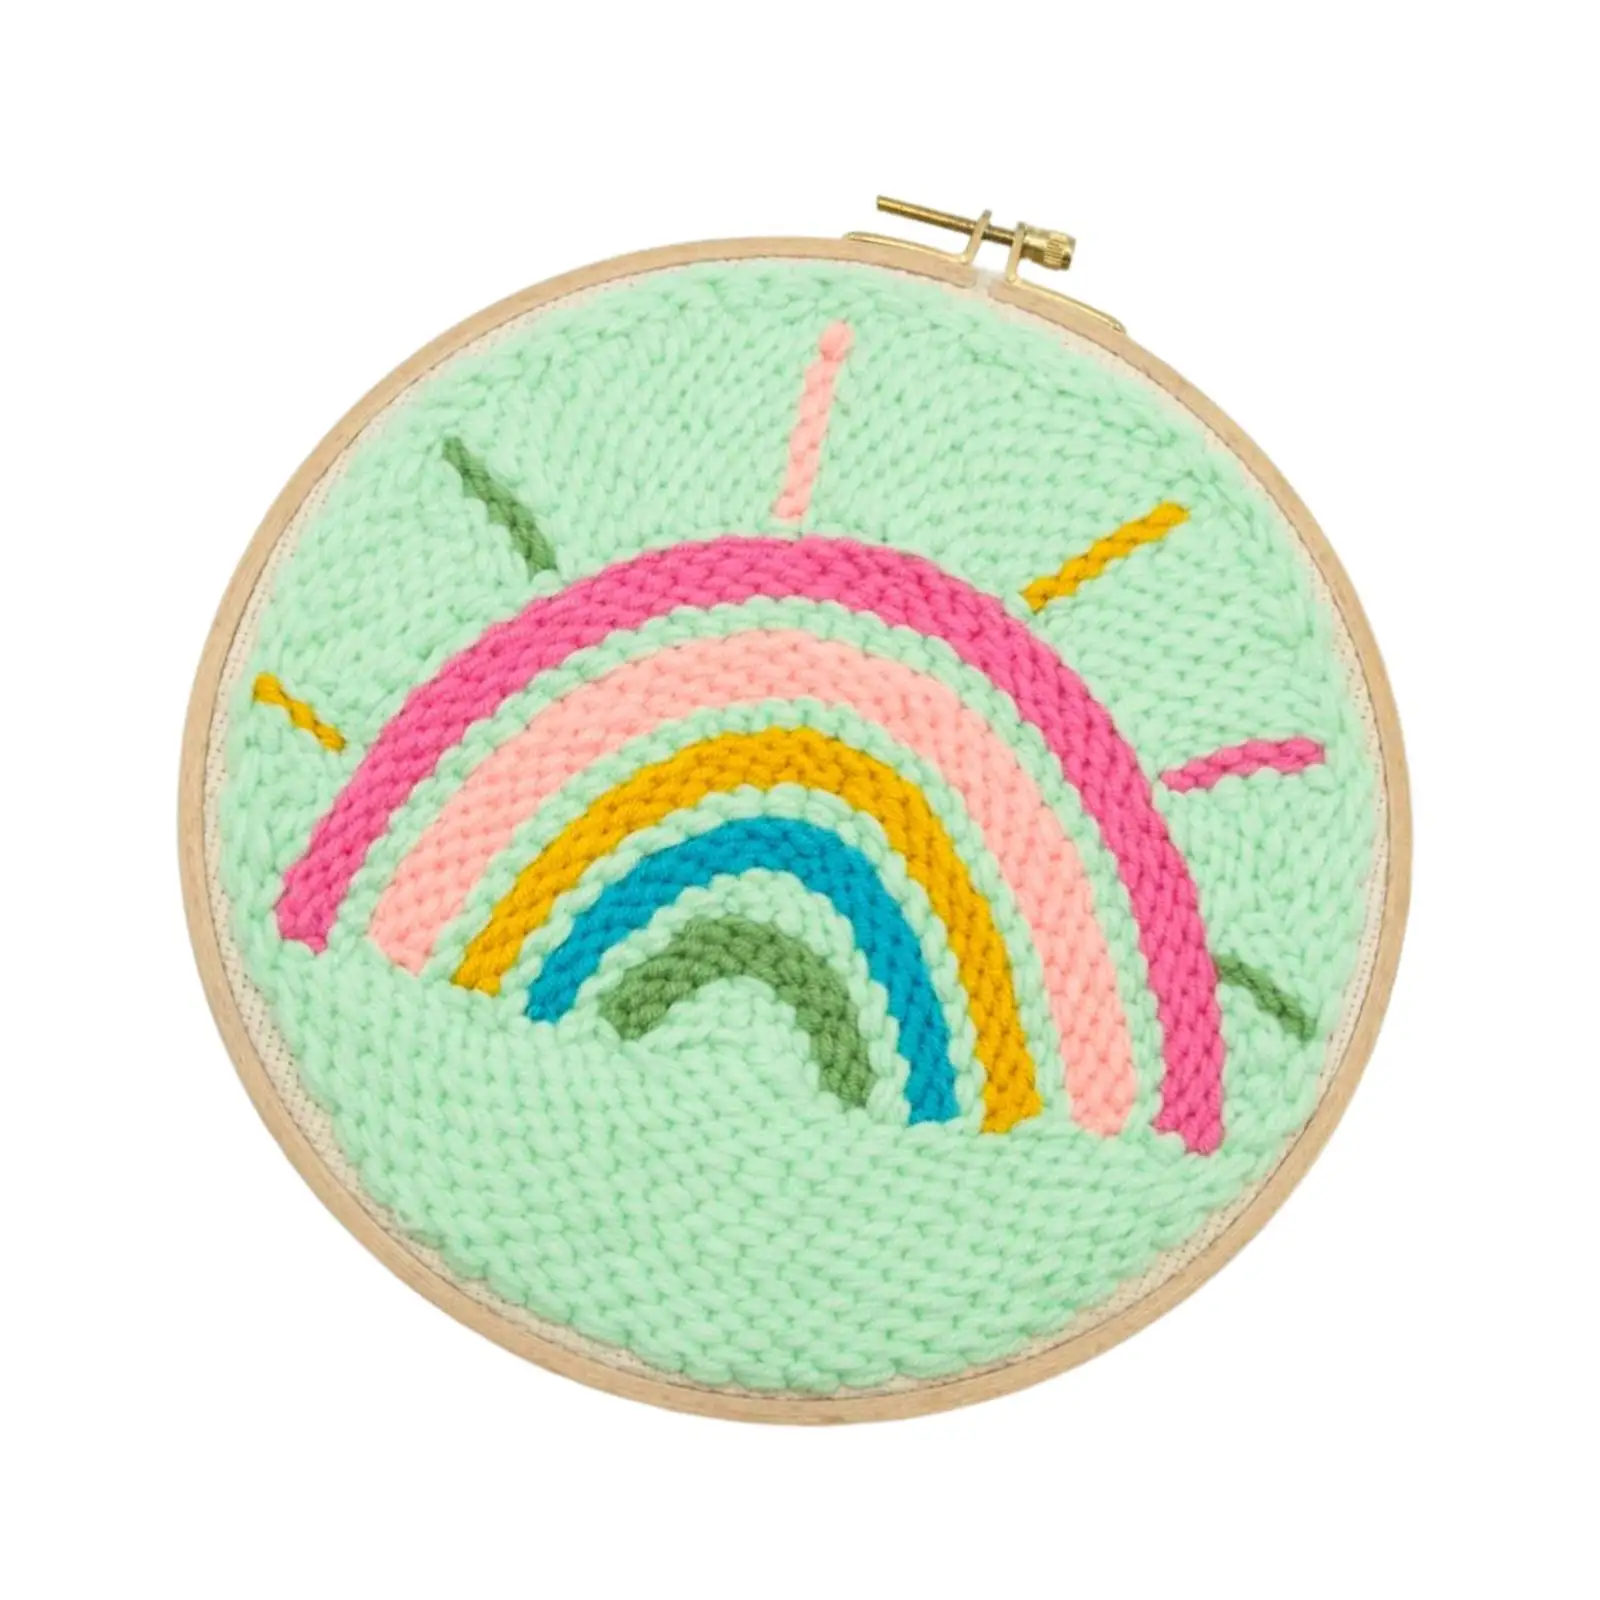 Punch Needle Embroidery Starter Kits Rainbow Landscape Instructions Rug Hooking Kit Punching Needle Needlework Sewing Beginner